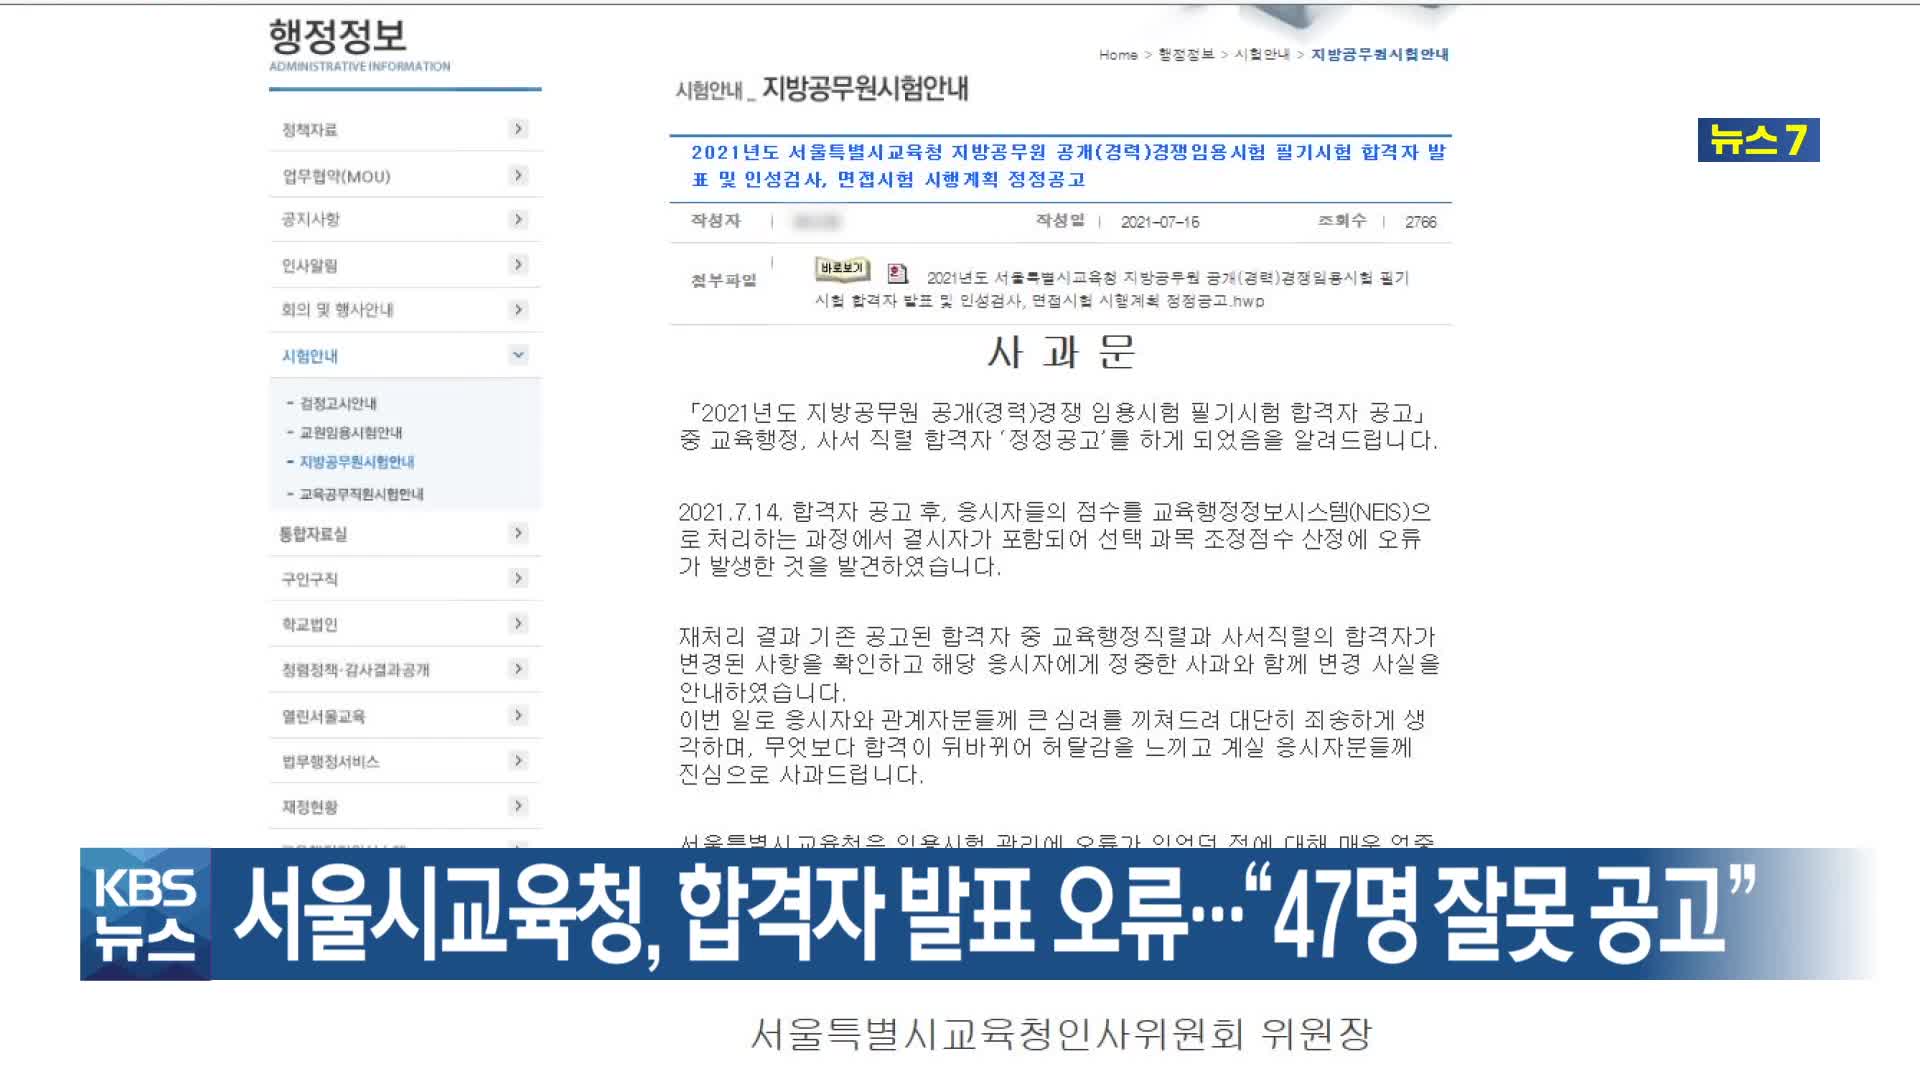 서울시교육청, 합격자 발표 오류…“47명 잘못 공고”